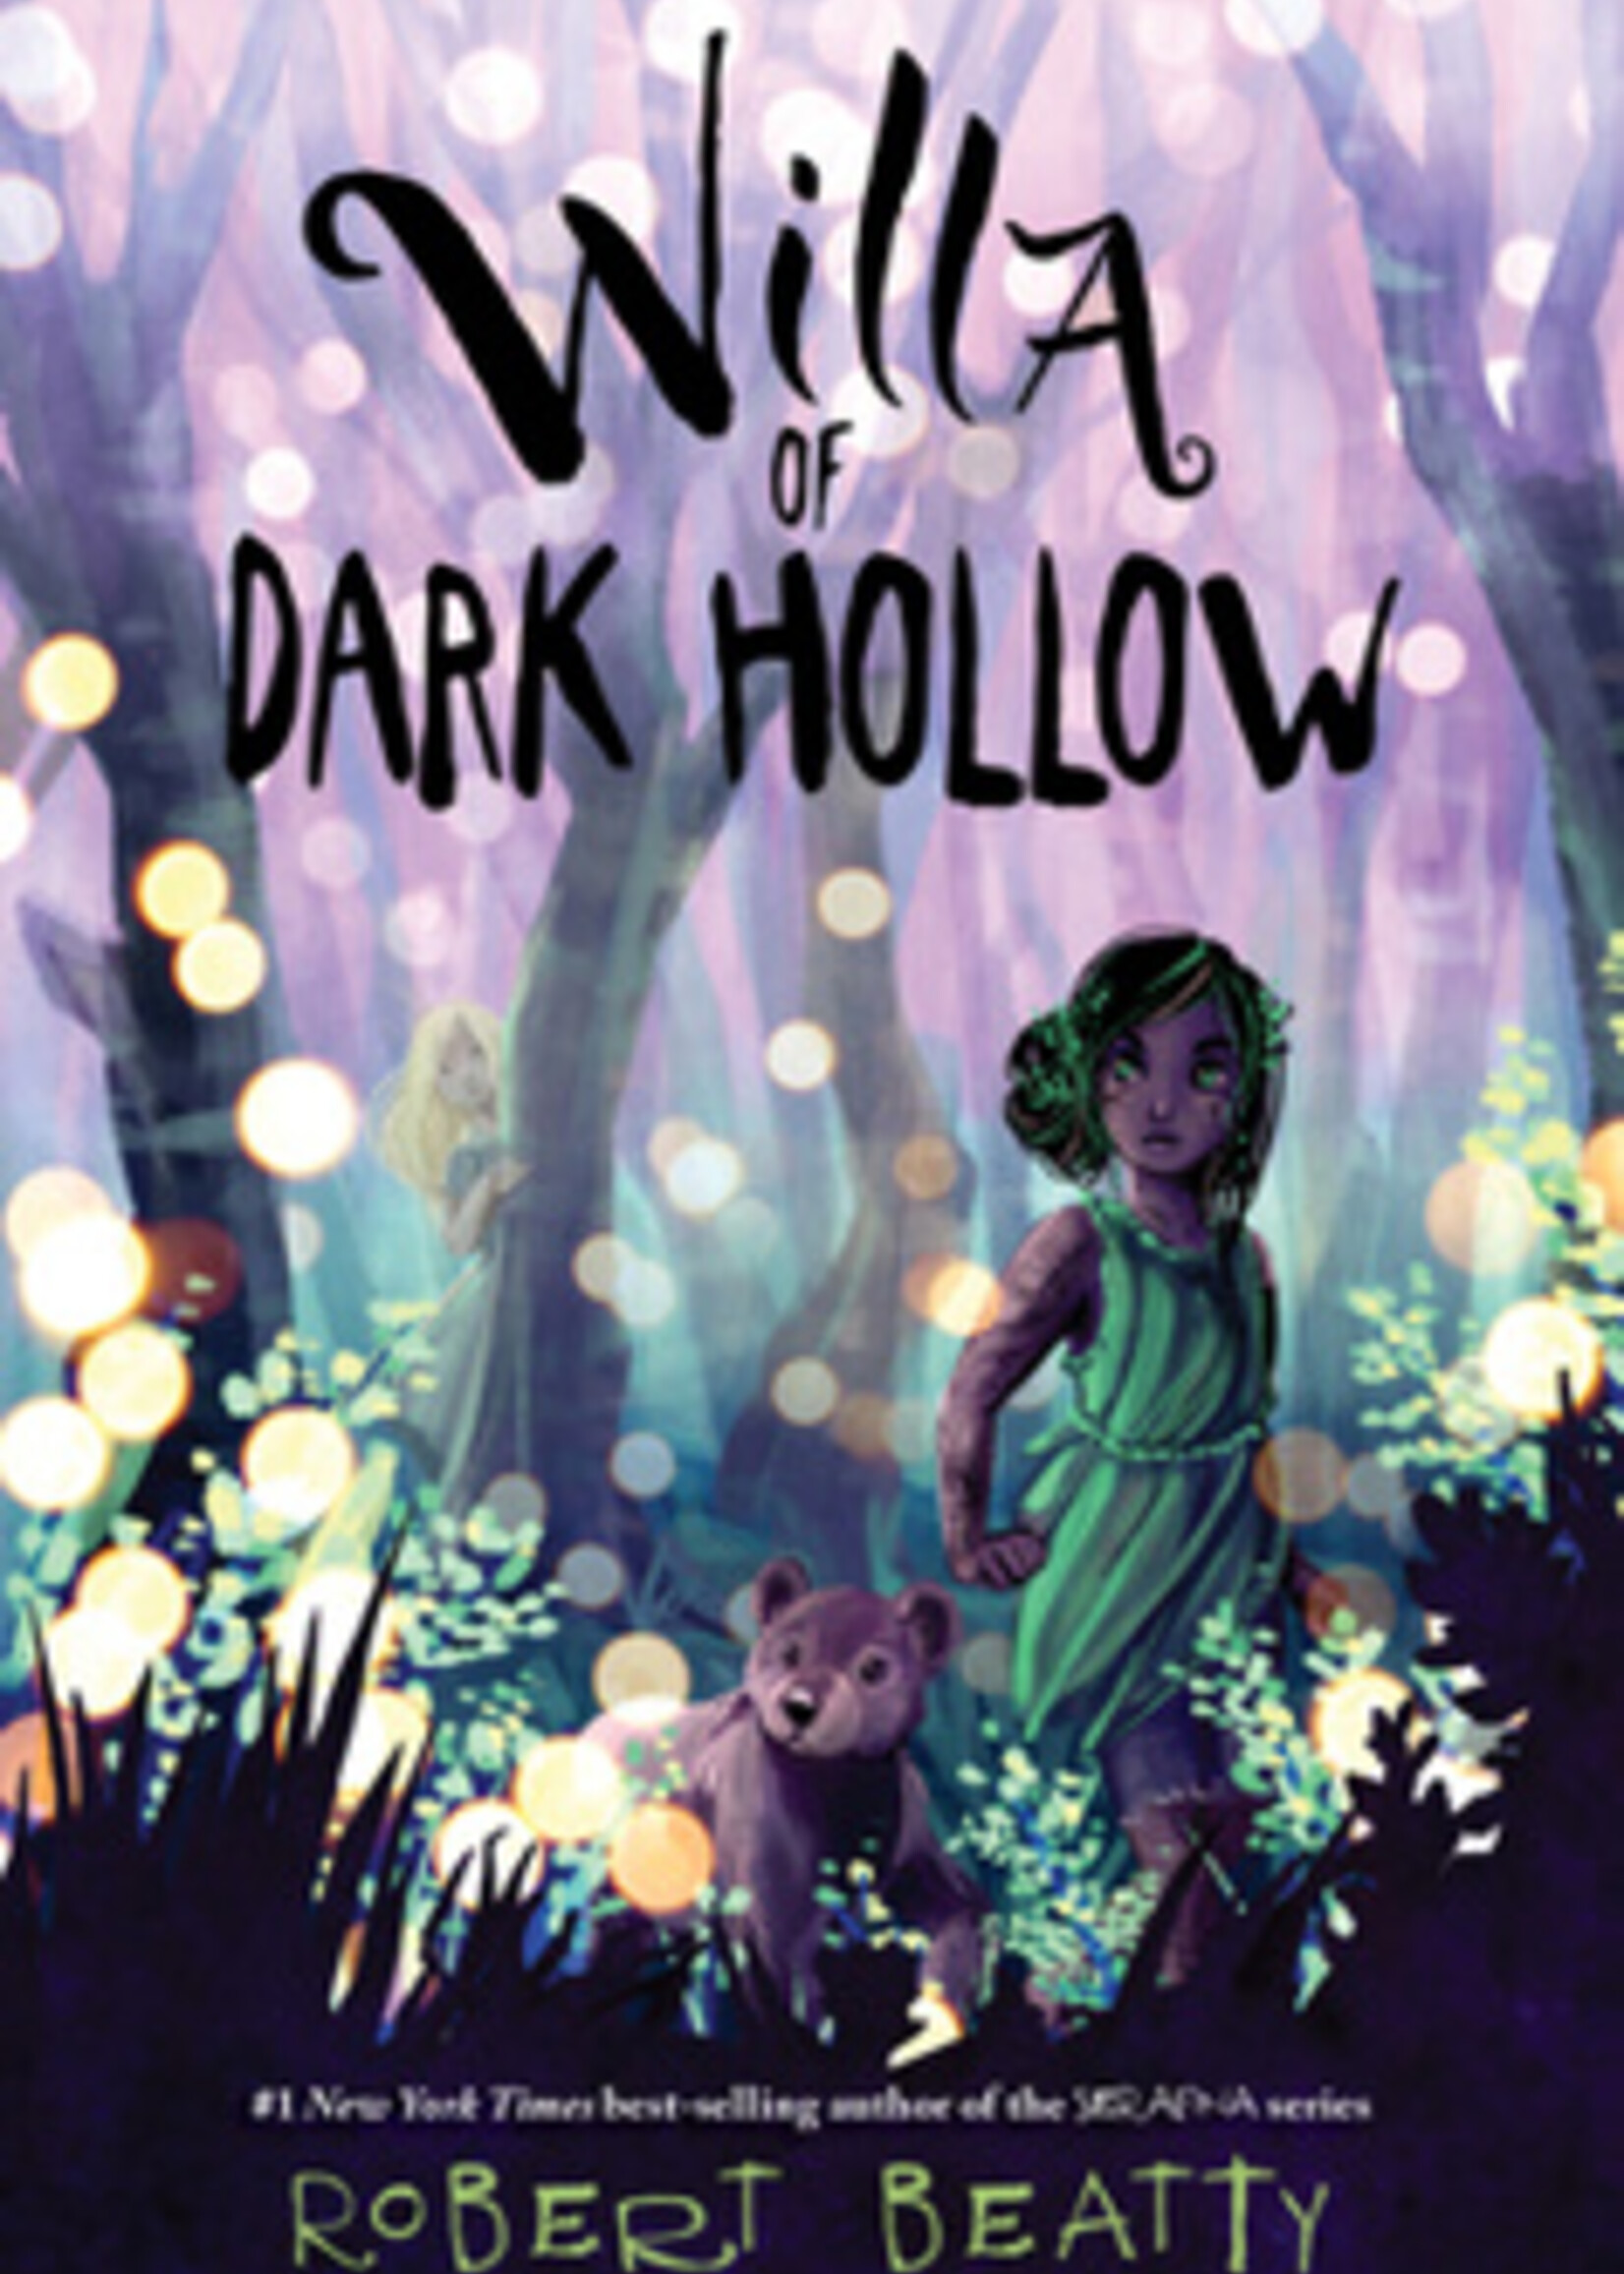 Hyperion Willa of Dark Hollow (N)